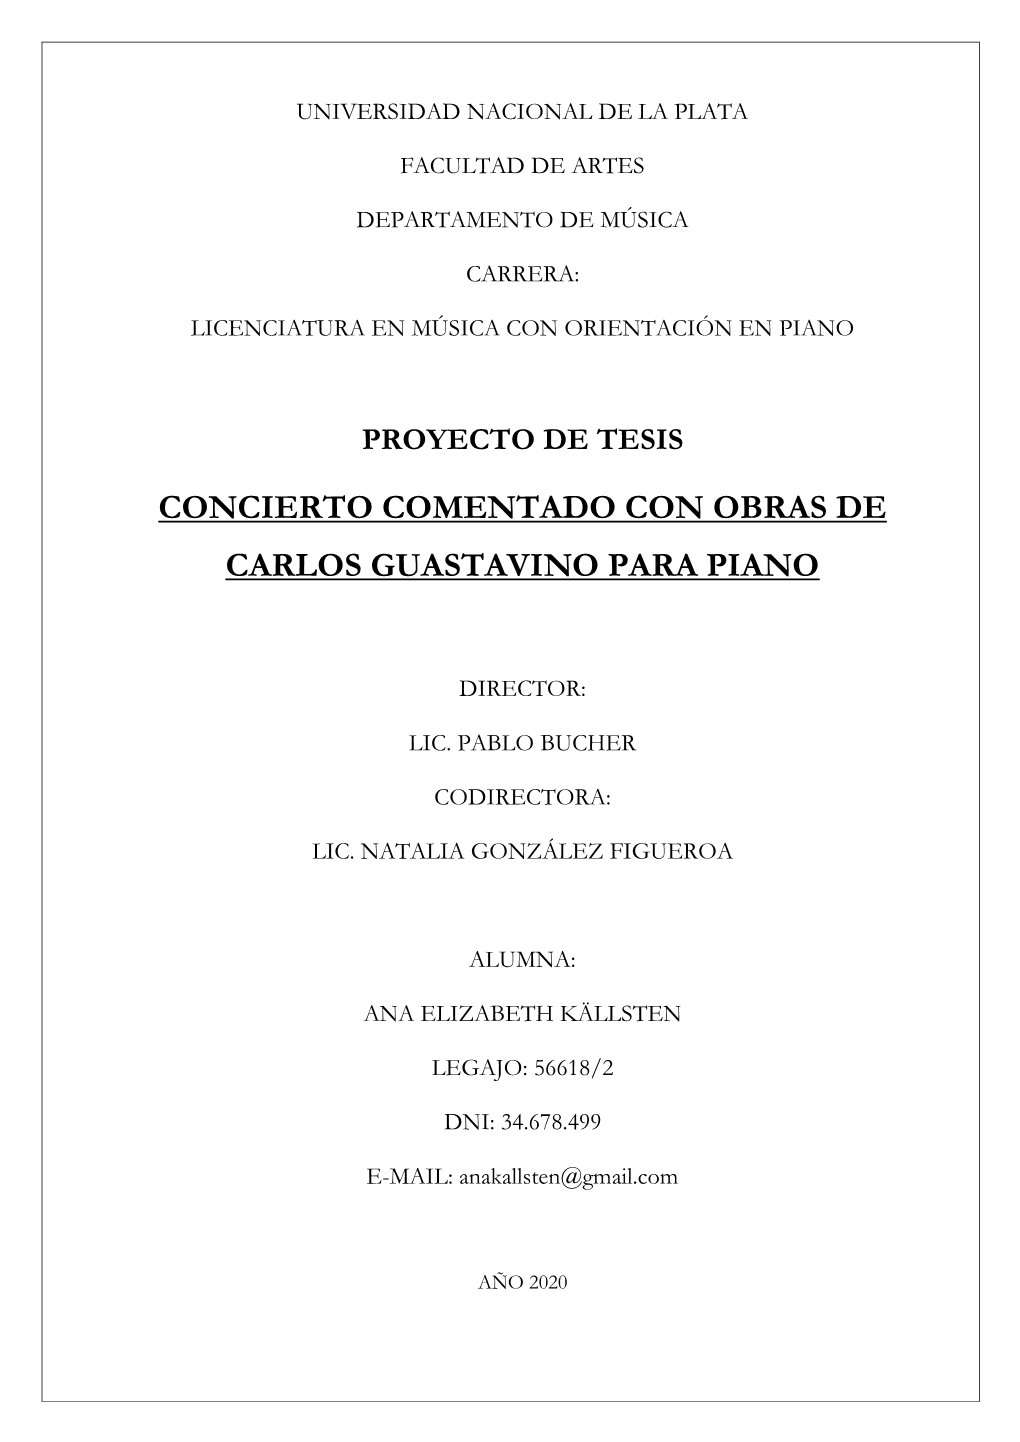 Proyecto De Tesis Concierto Comentado Con Obras De Carlos Guastavino